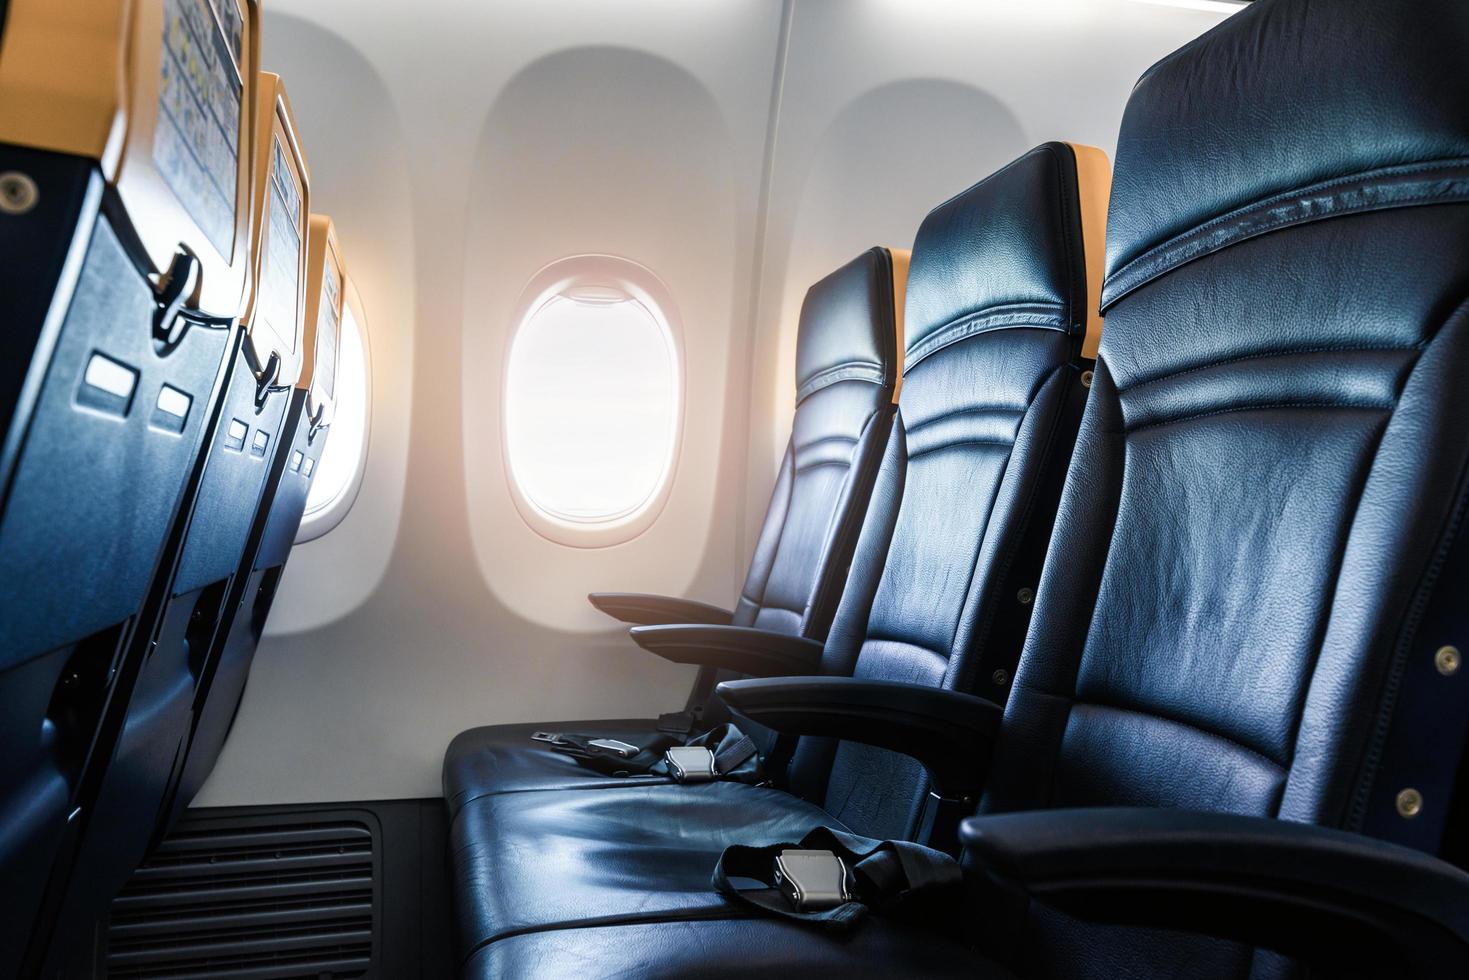 interior del avión - cabina con silla de cuero moderna para el pasajero del avión. asientos de aviones y ventana. - imagen horizontal foto